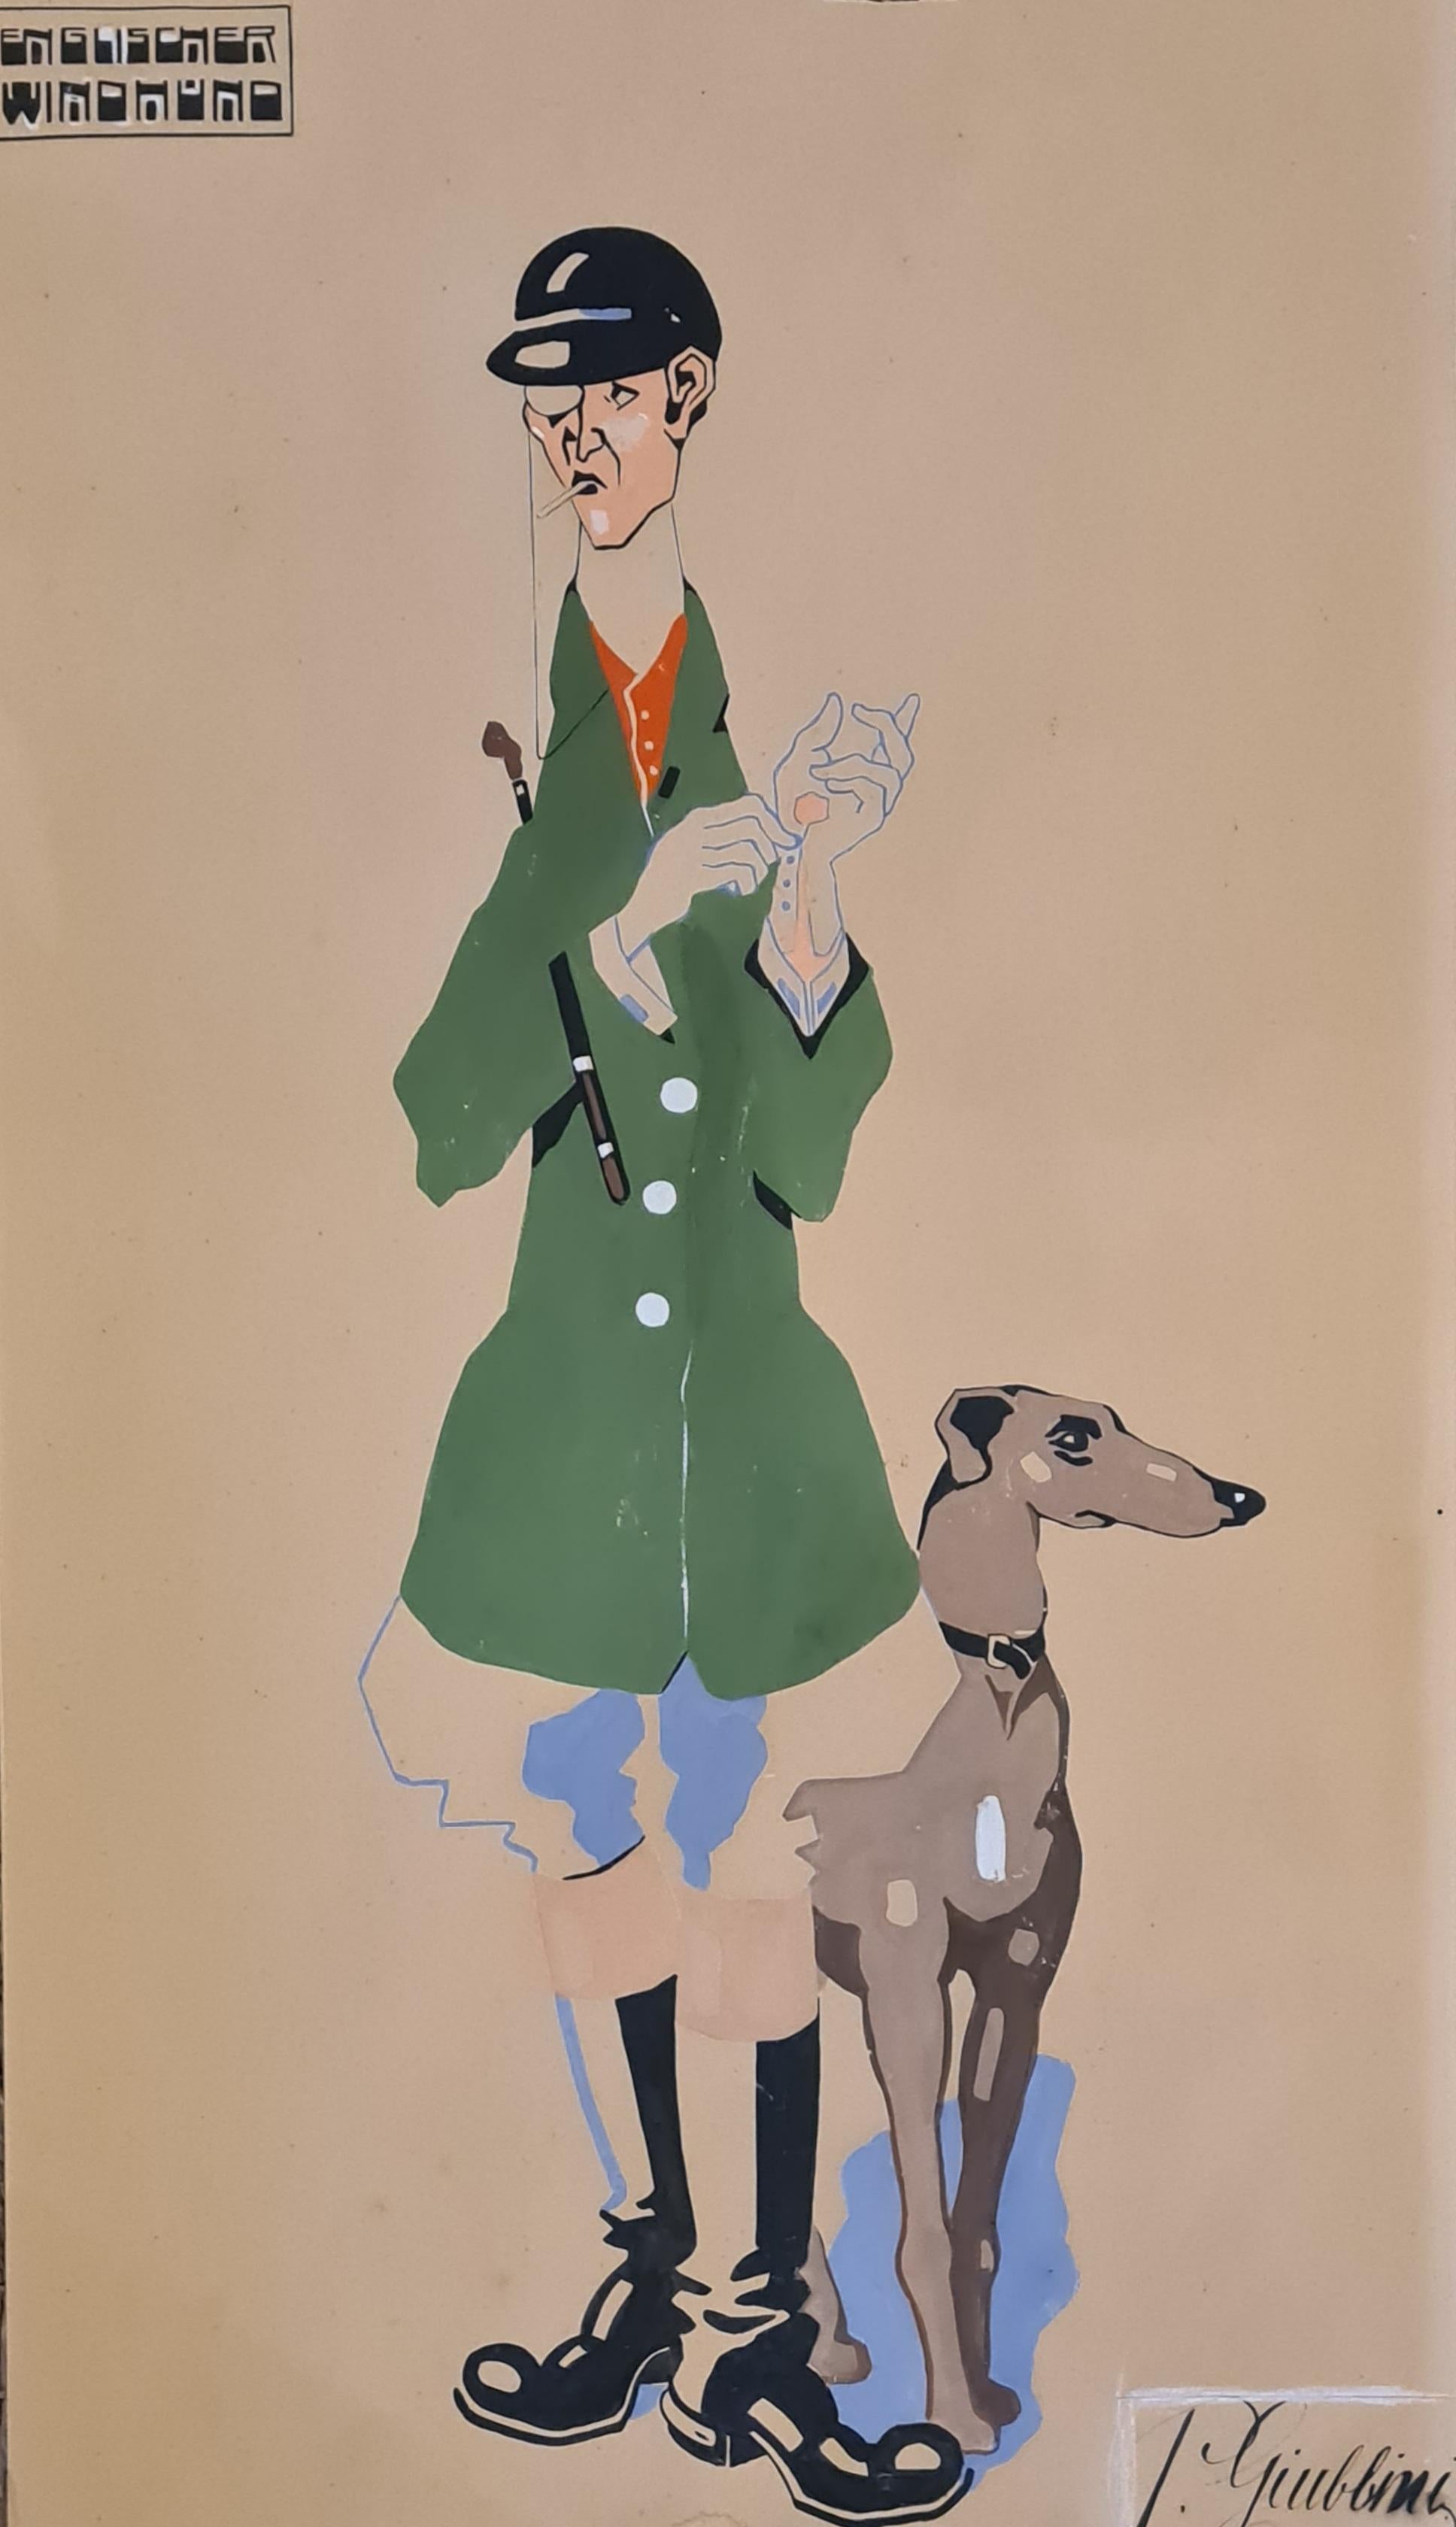 Englischer Windhund und Preussischer Landjuncker. 2 Art-Déco-Porträts in Gouache  – Painting von P Giubbini